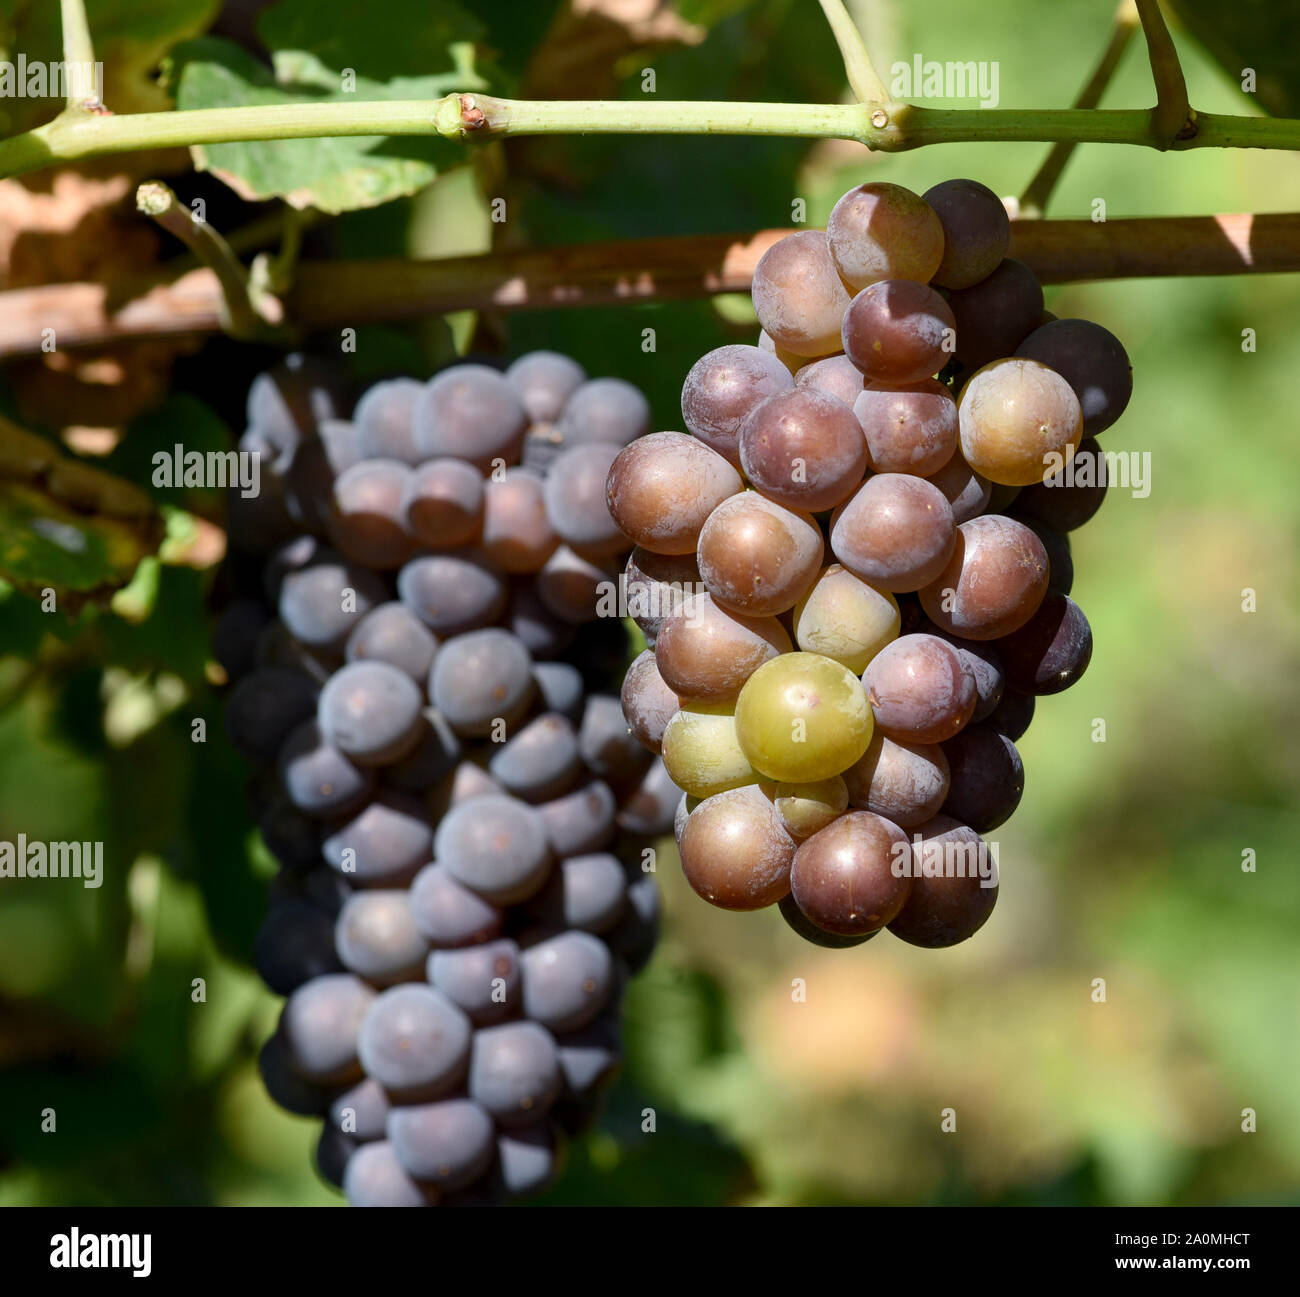 Grauburgunder, Pinot gris, auch genannt Rulaender ist eine Weissweinsorte, die hauptsaechlich am Rhein und an der Mosel zu Wein vergoren wird. La GRA Foto de stock